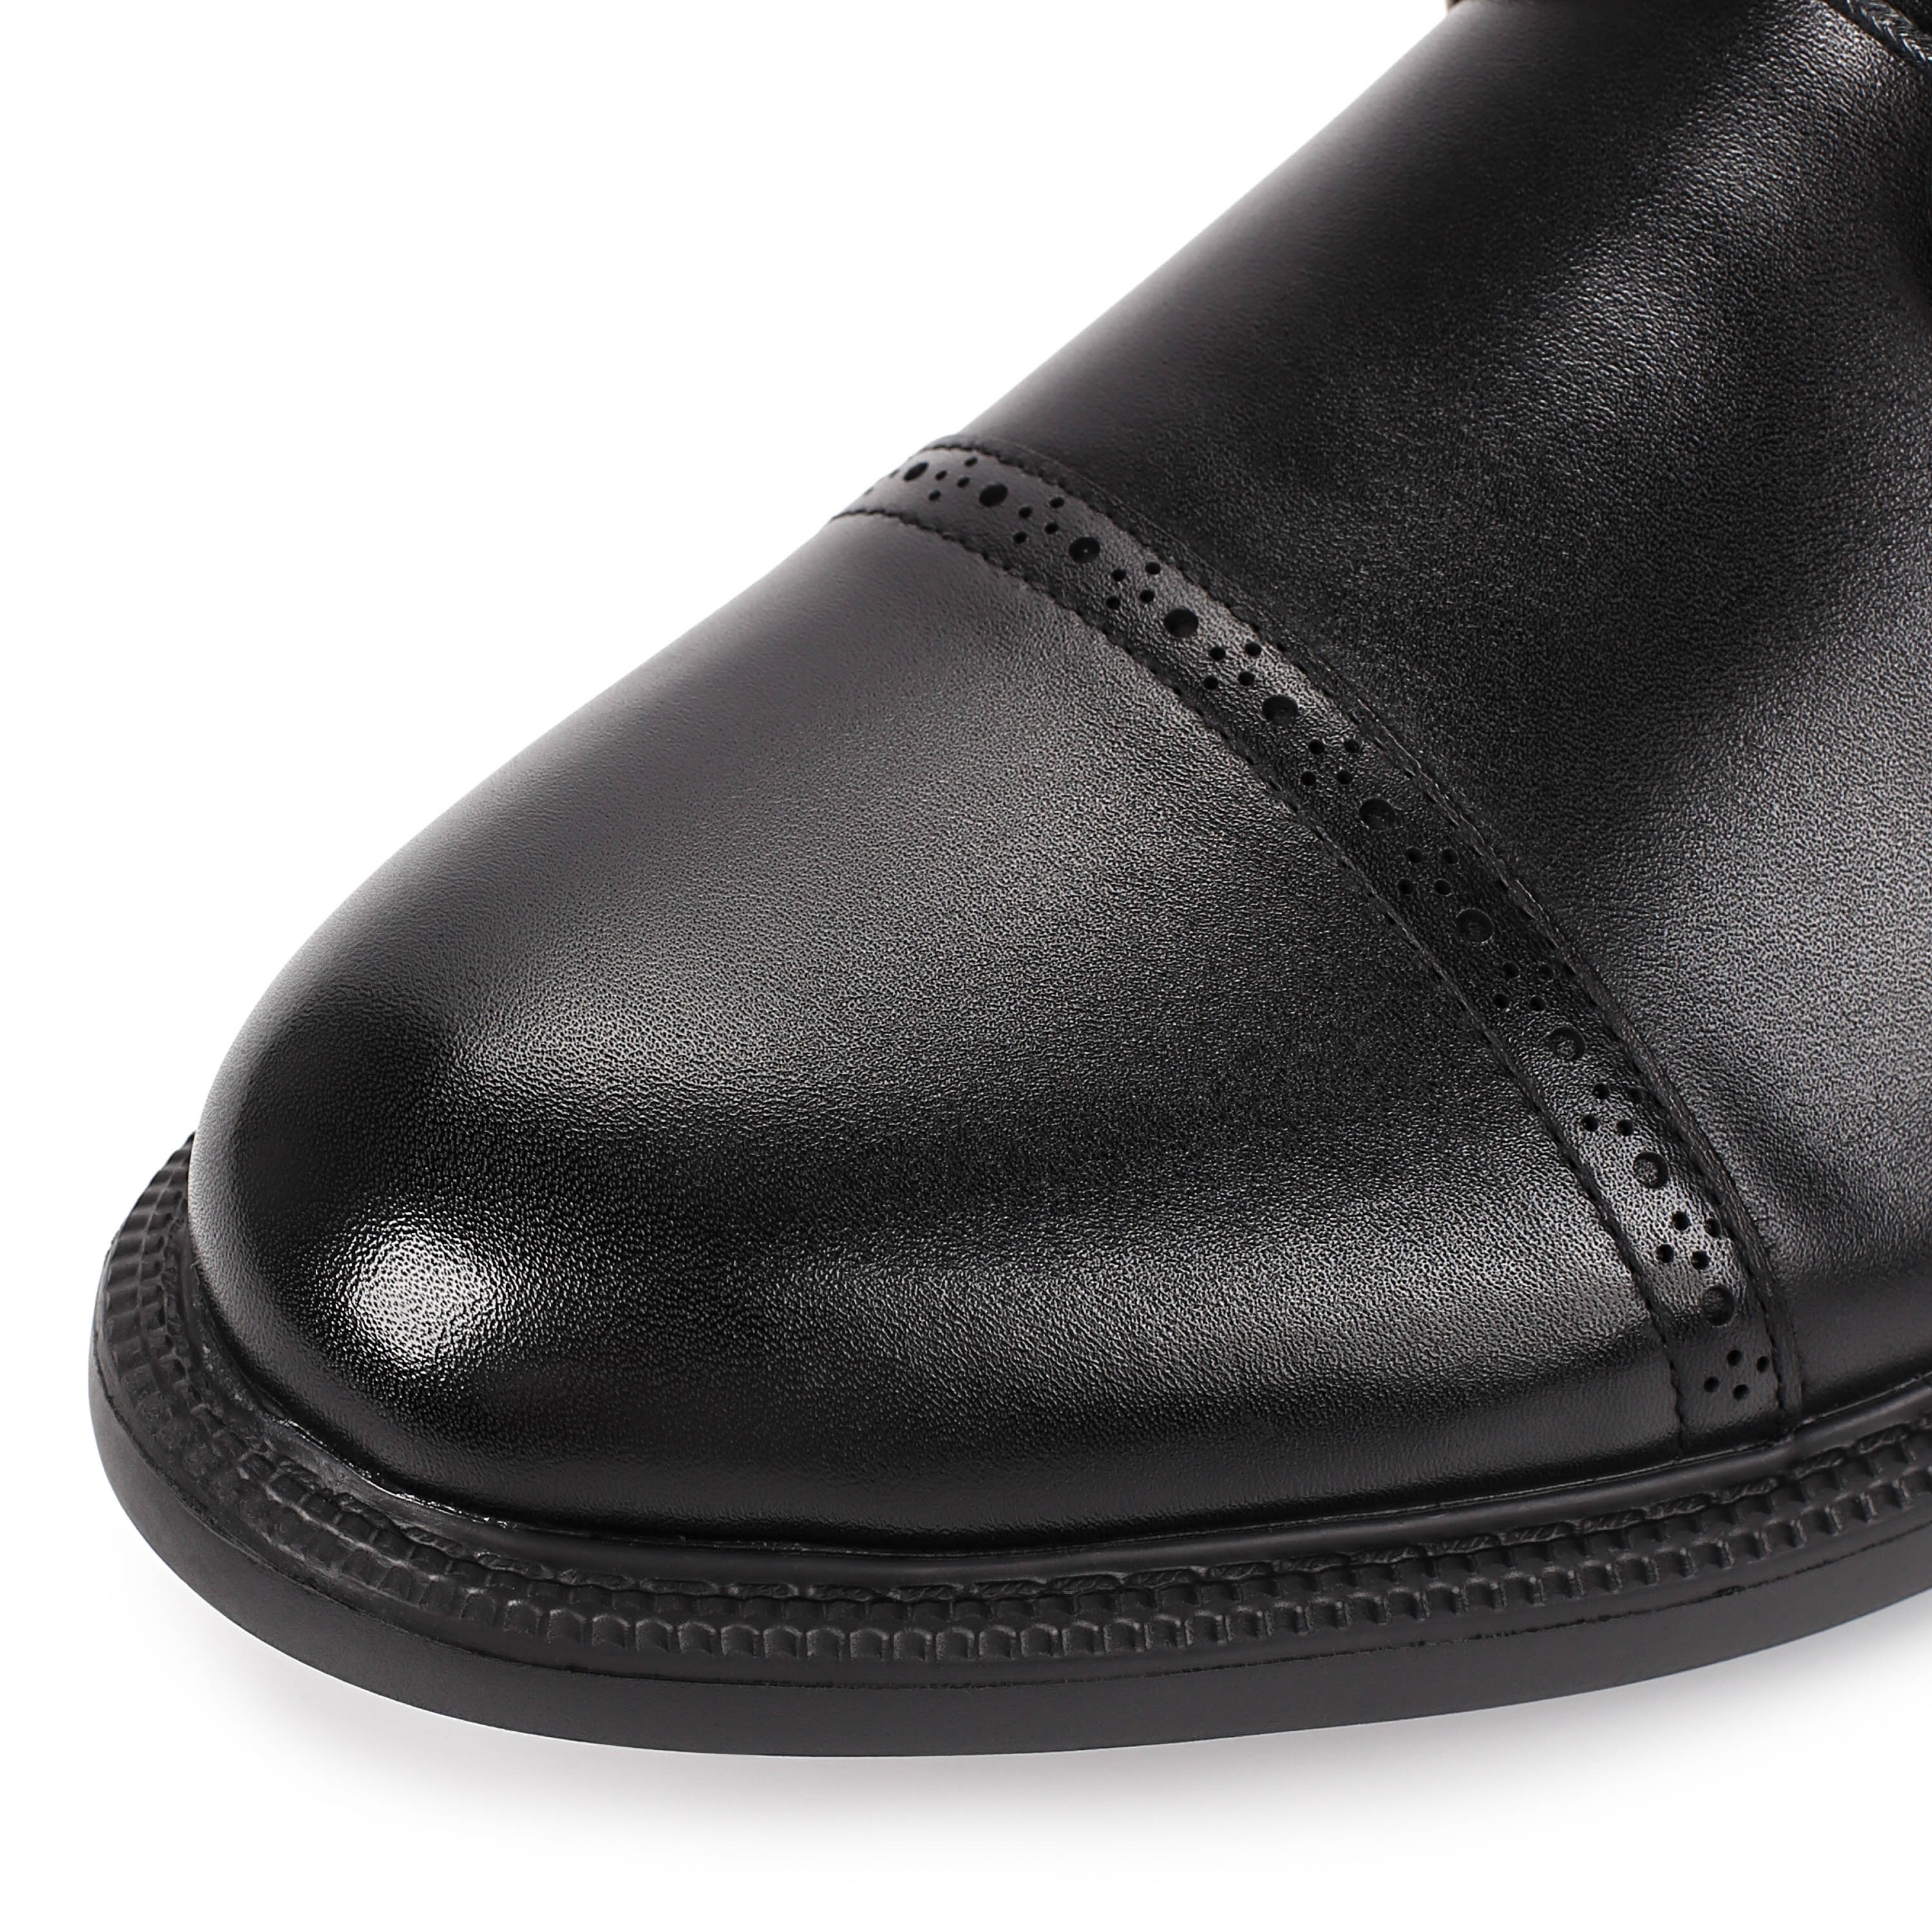 Ботинки Thomas Munz 073-383A-2102 073-383A-2102, цвет черный, размер 44 дерби - фото 6